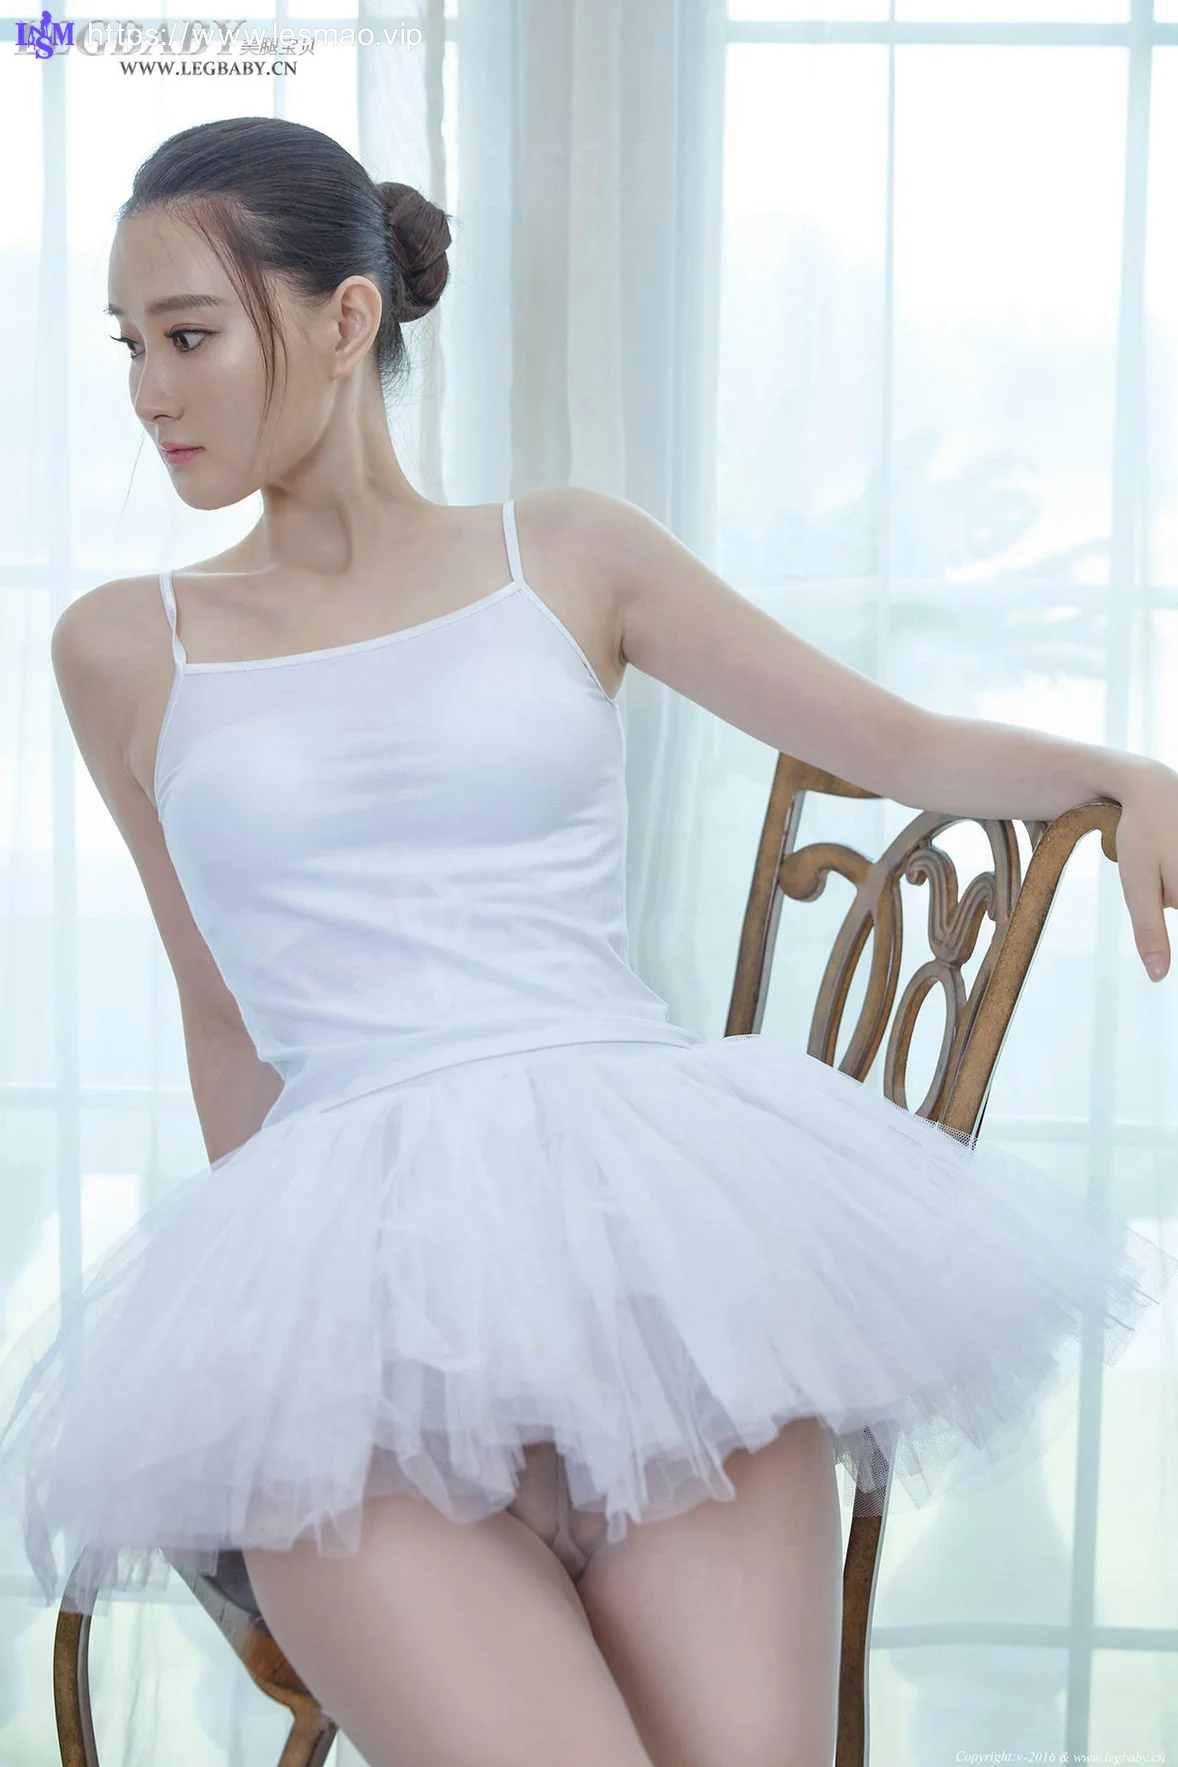 Legbaby 美腿宝贝 No.027 Modo 潇潇芭蕾女孩和健身美女 - 2